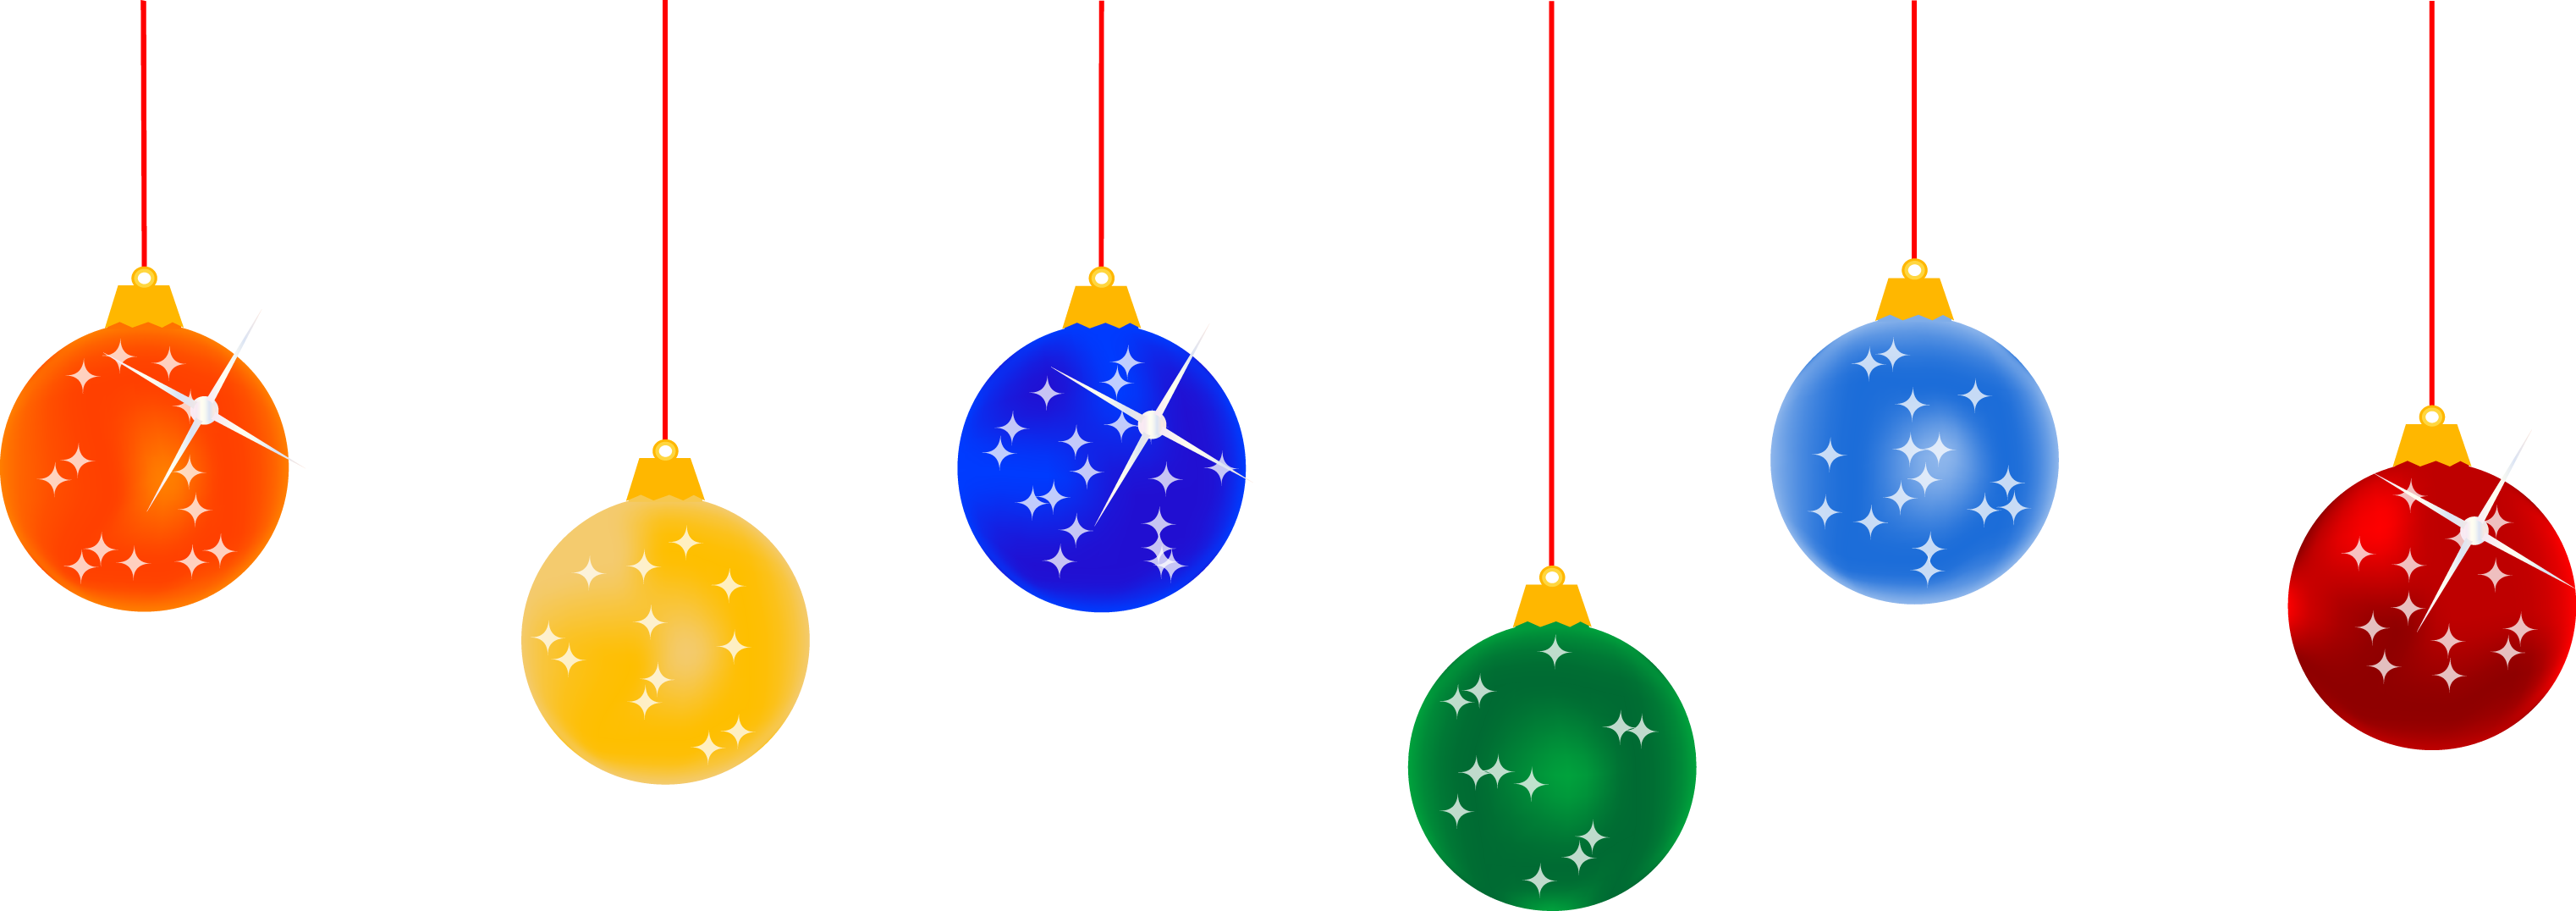 hanging holiday bulbs